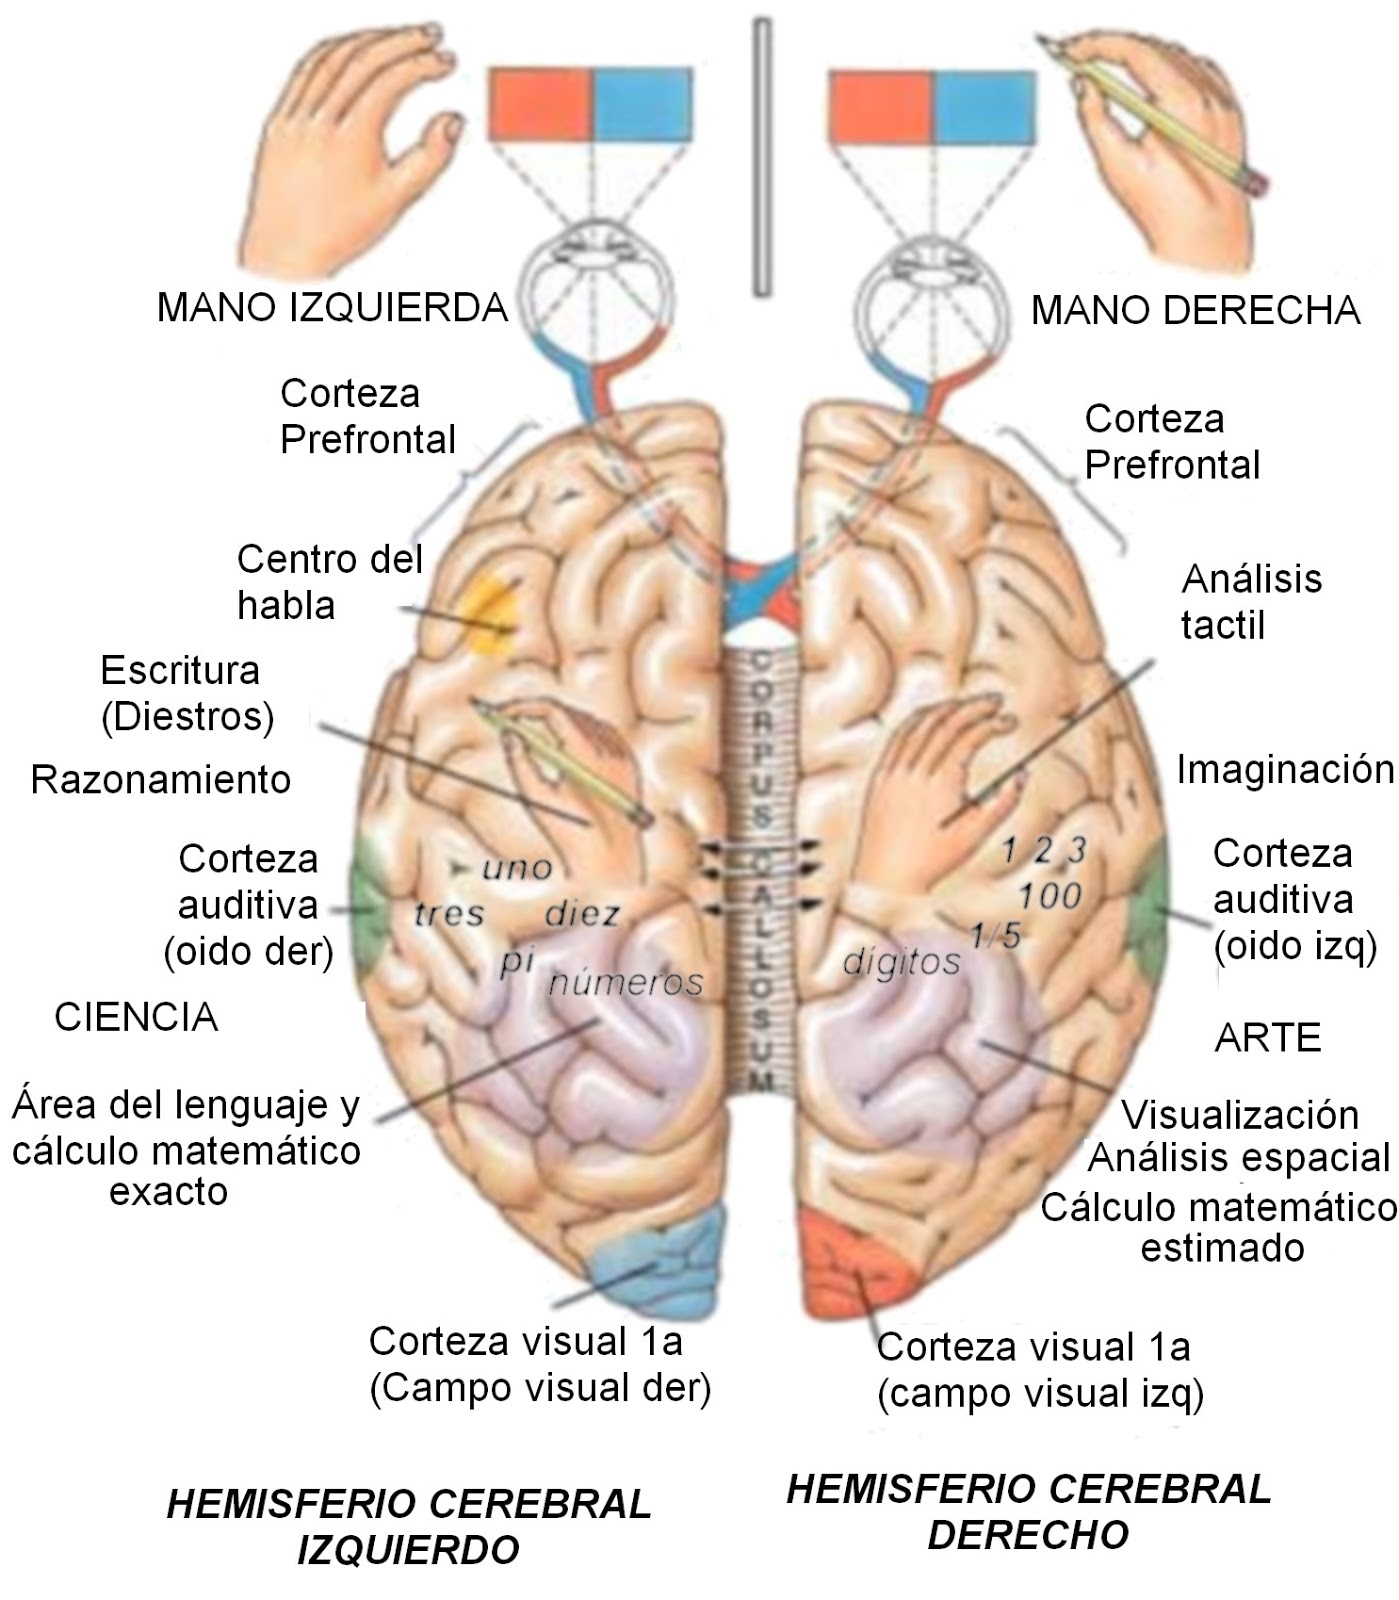 Hemisferio derecho e izquierdo y sus funciones